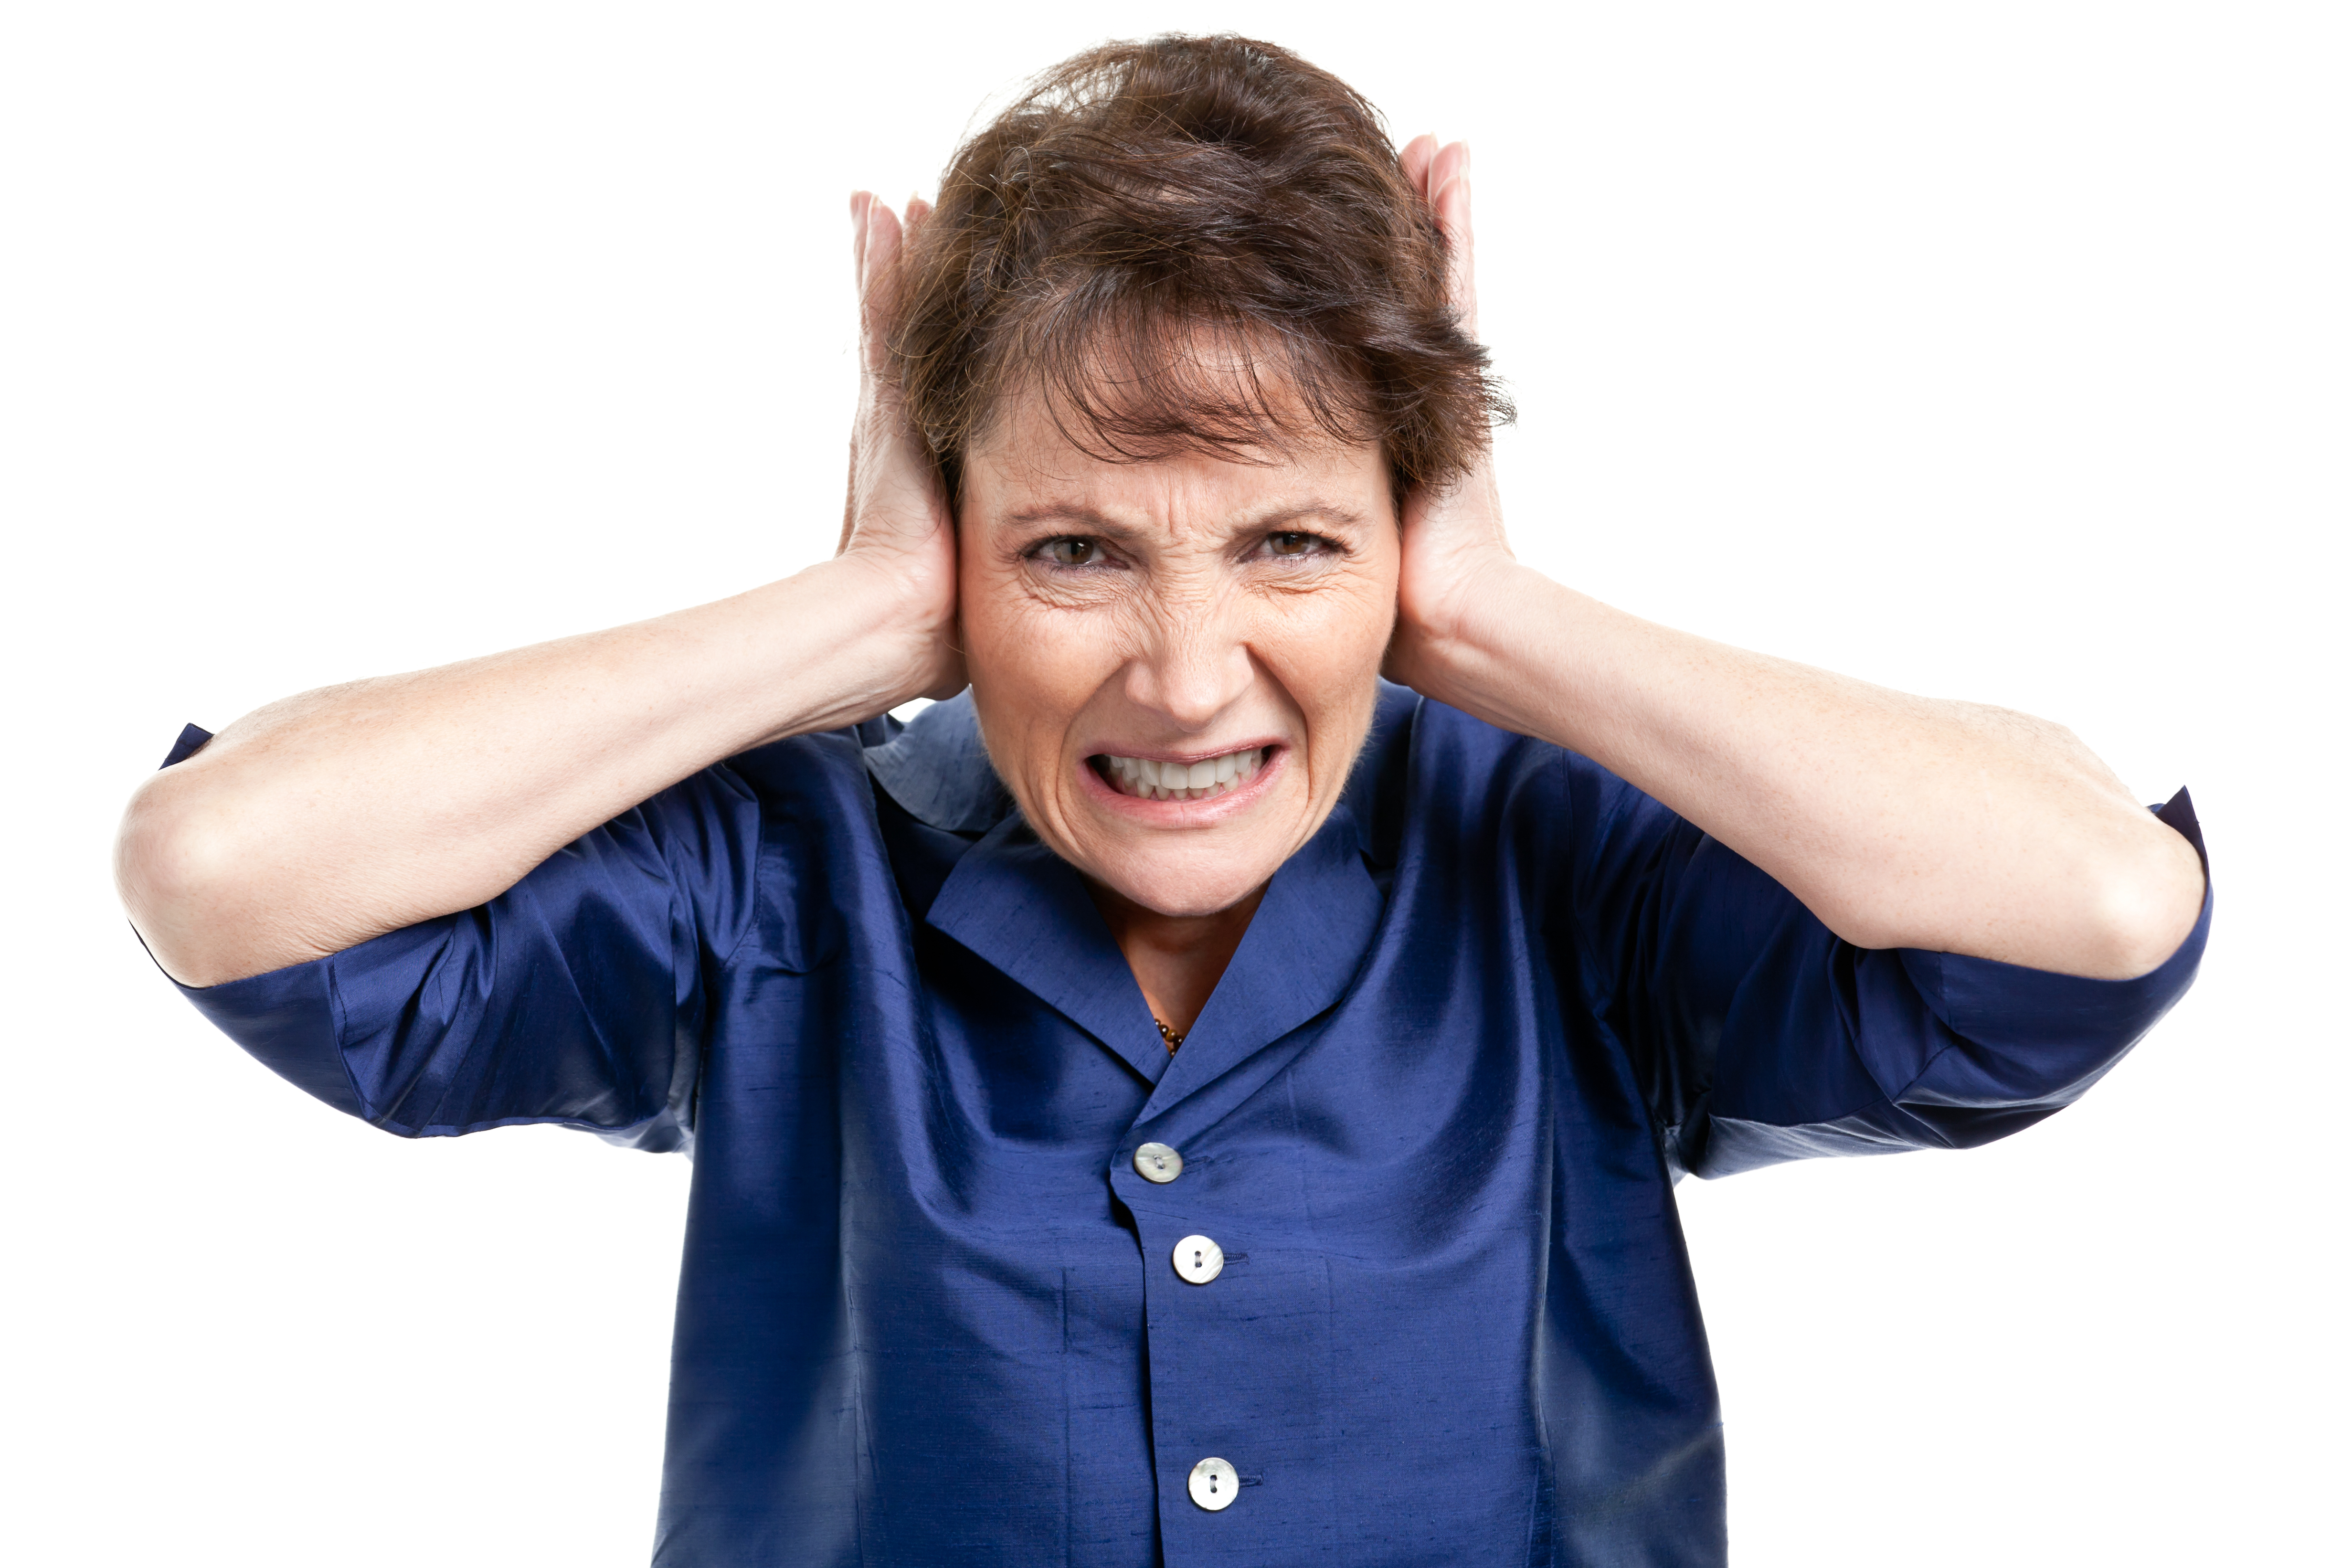 Un subtipo de misofonía es la fonofobia cuando es el miedo a un sonido específico es la emoción predominante. En general las emociones predominantes en la misofonía son la ira, irritación, estrés y ansiedad, sensación de sentirse atrapado e impaciente